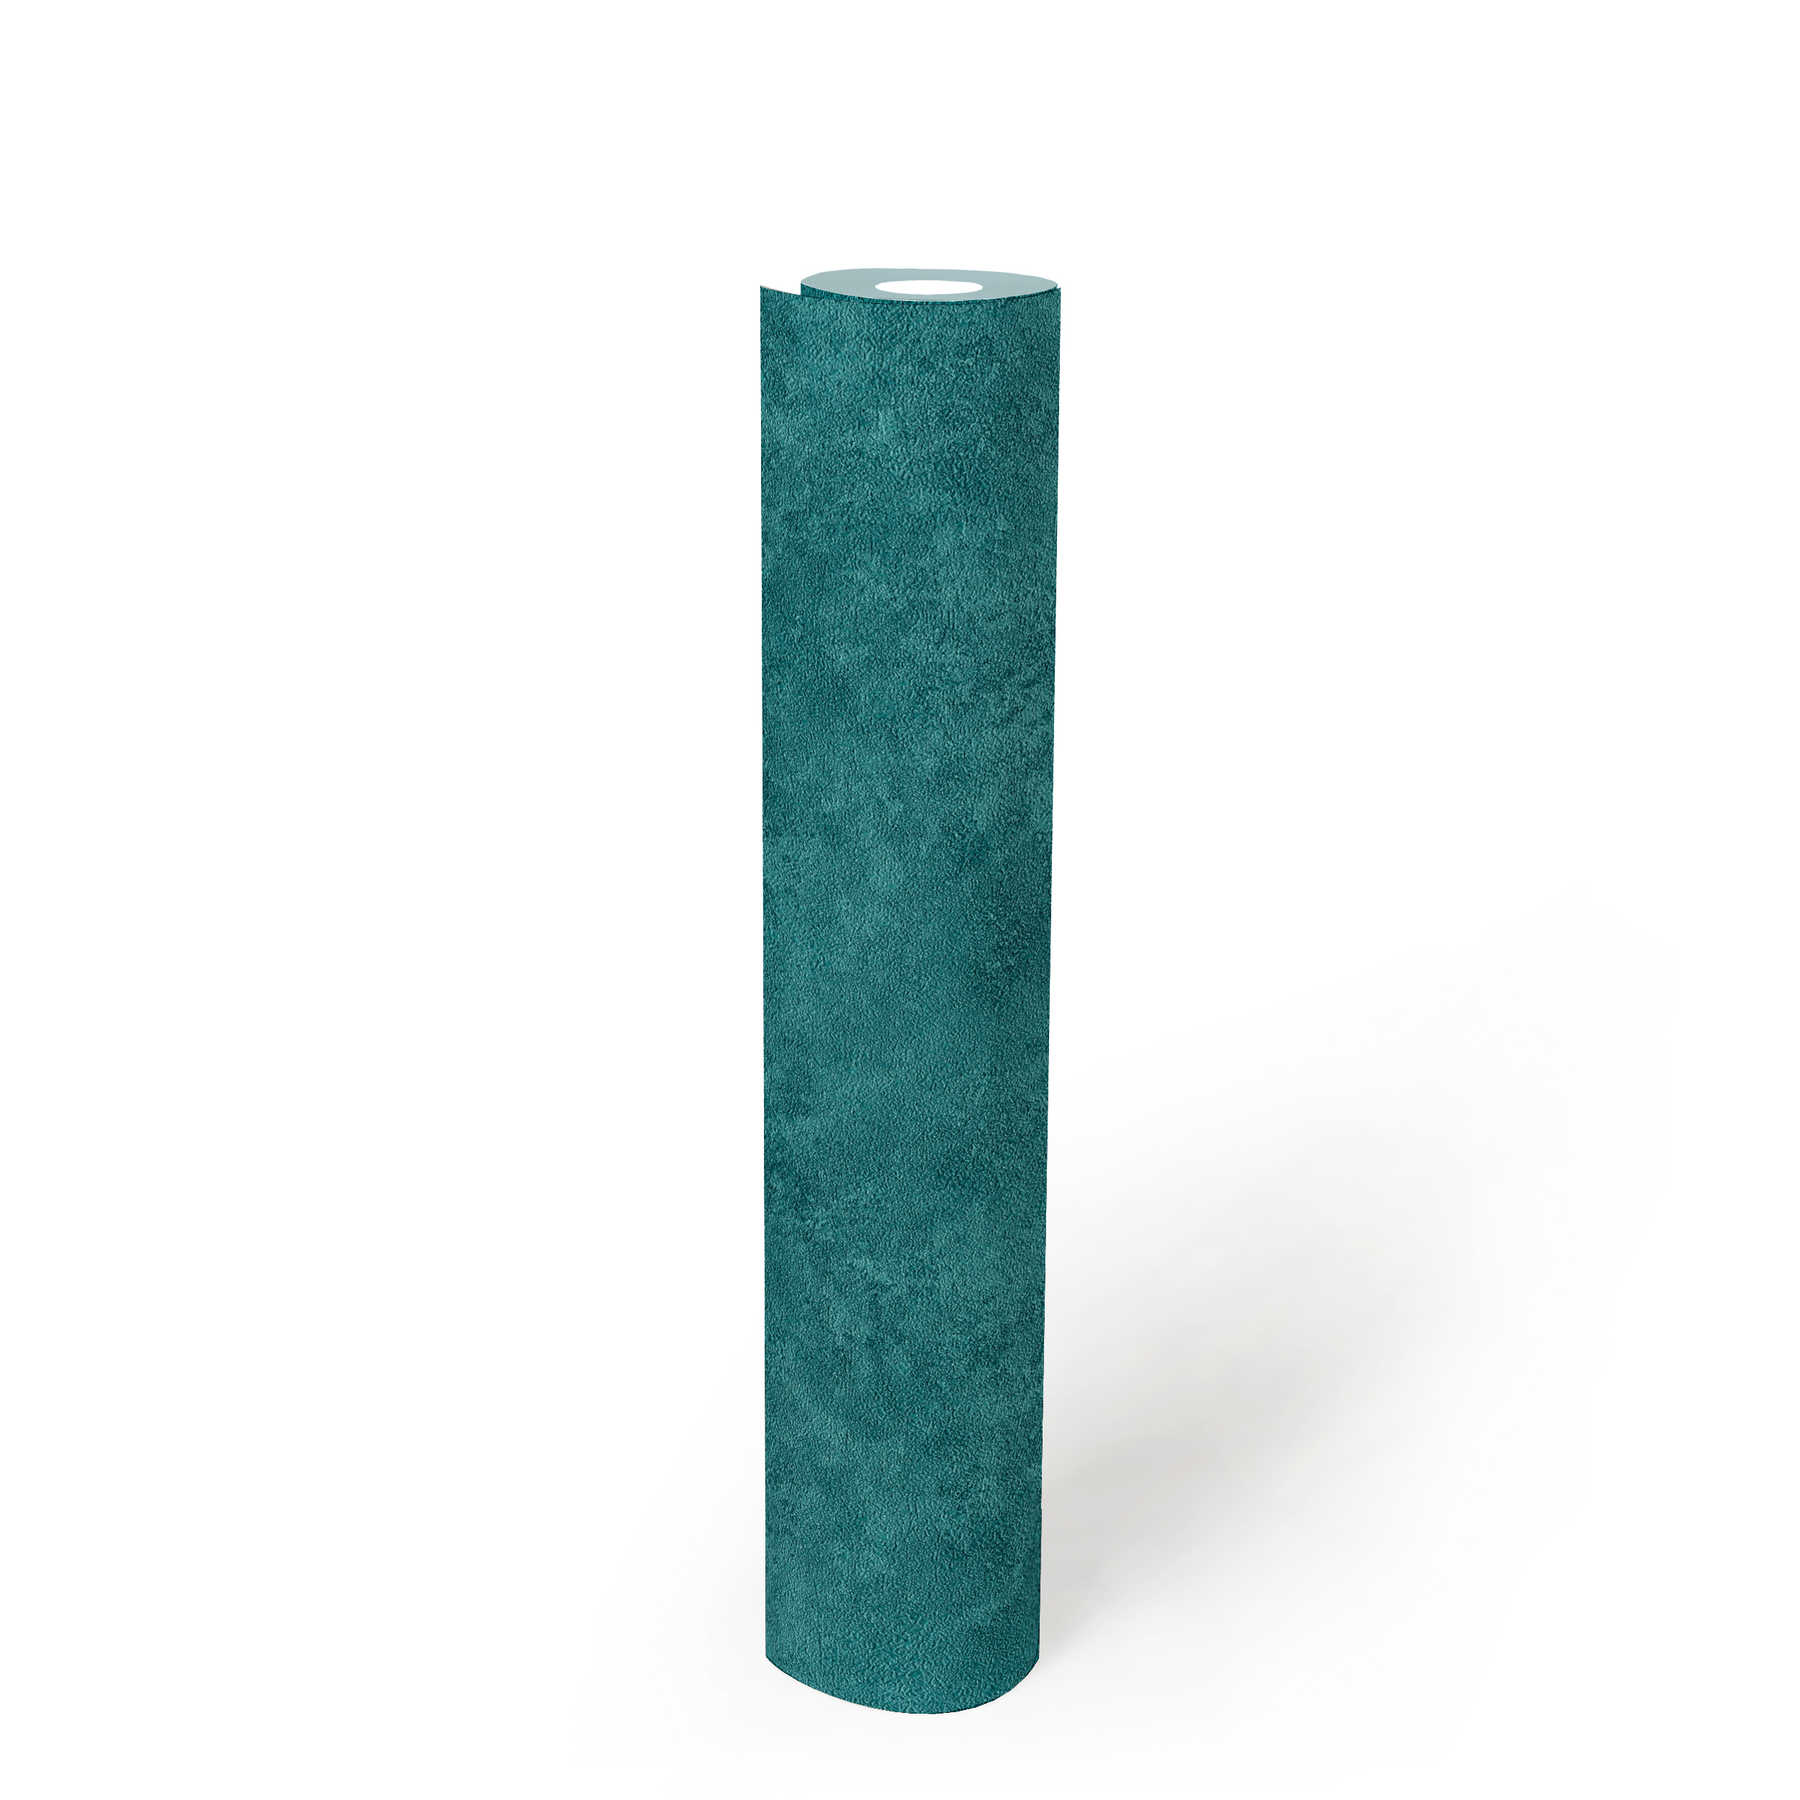             Papier peint uni Nuances de couleurs, motif naturel structuré - turquoise, bleu, vert
        